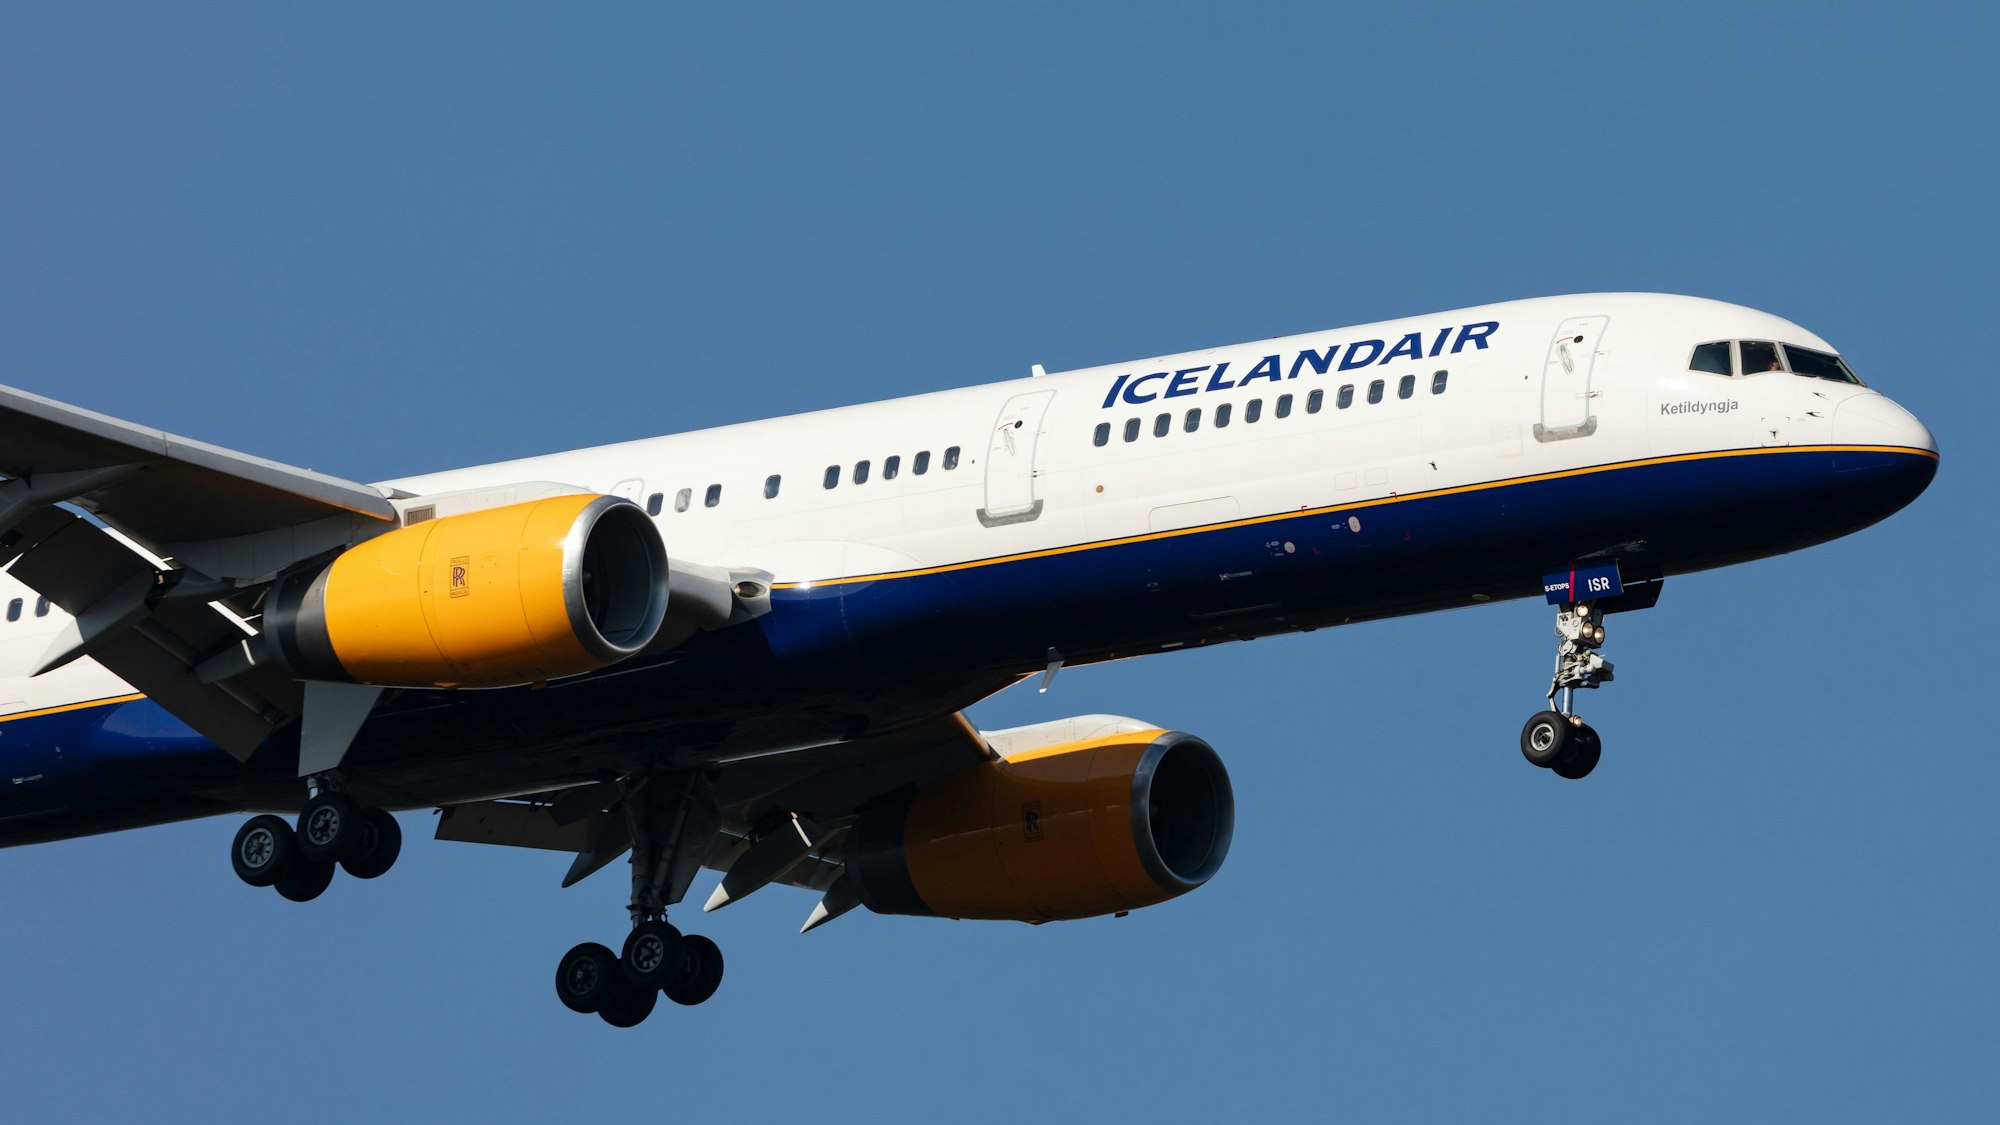 Eine Boeing 757 der isländischen Fluggesellschaft Icelandair ist am Himmel zu sehen. (Symbolbild)